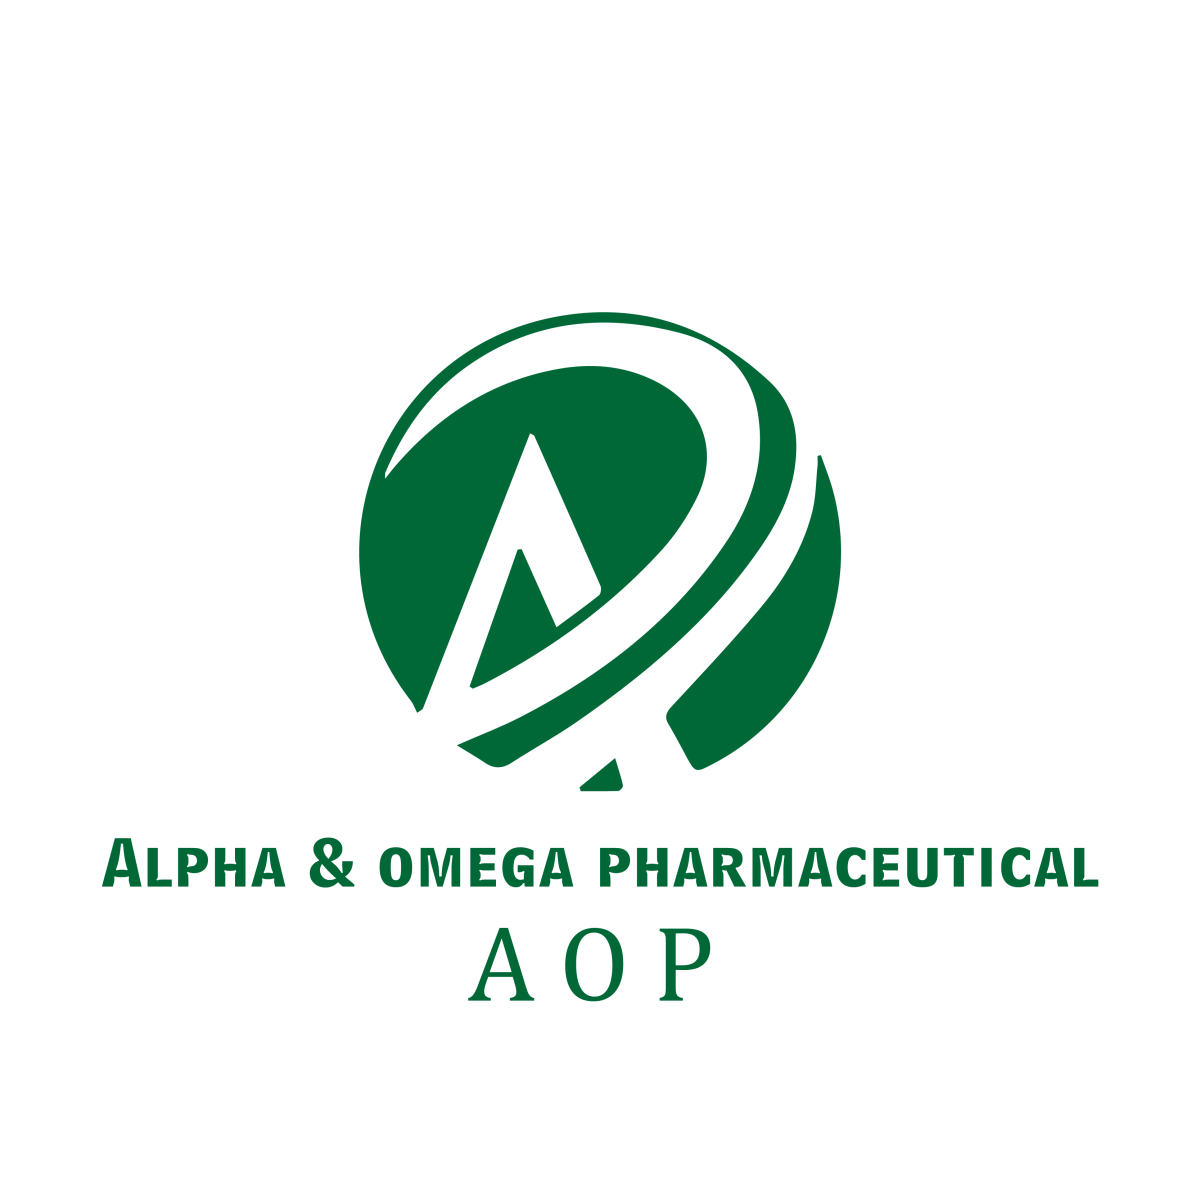 aop1 logo